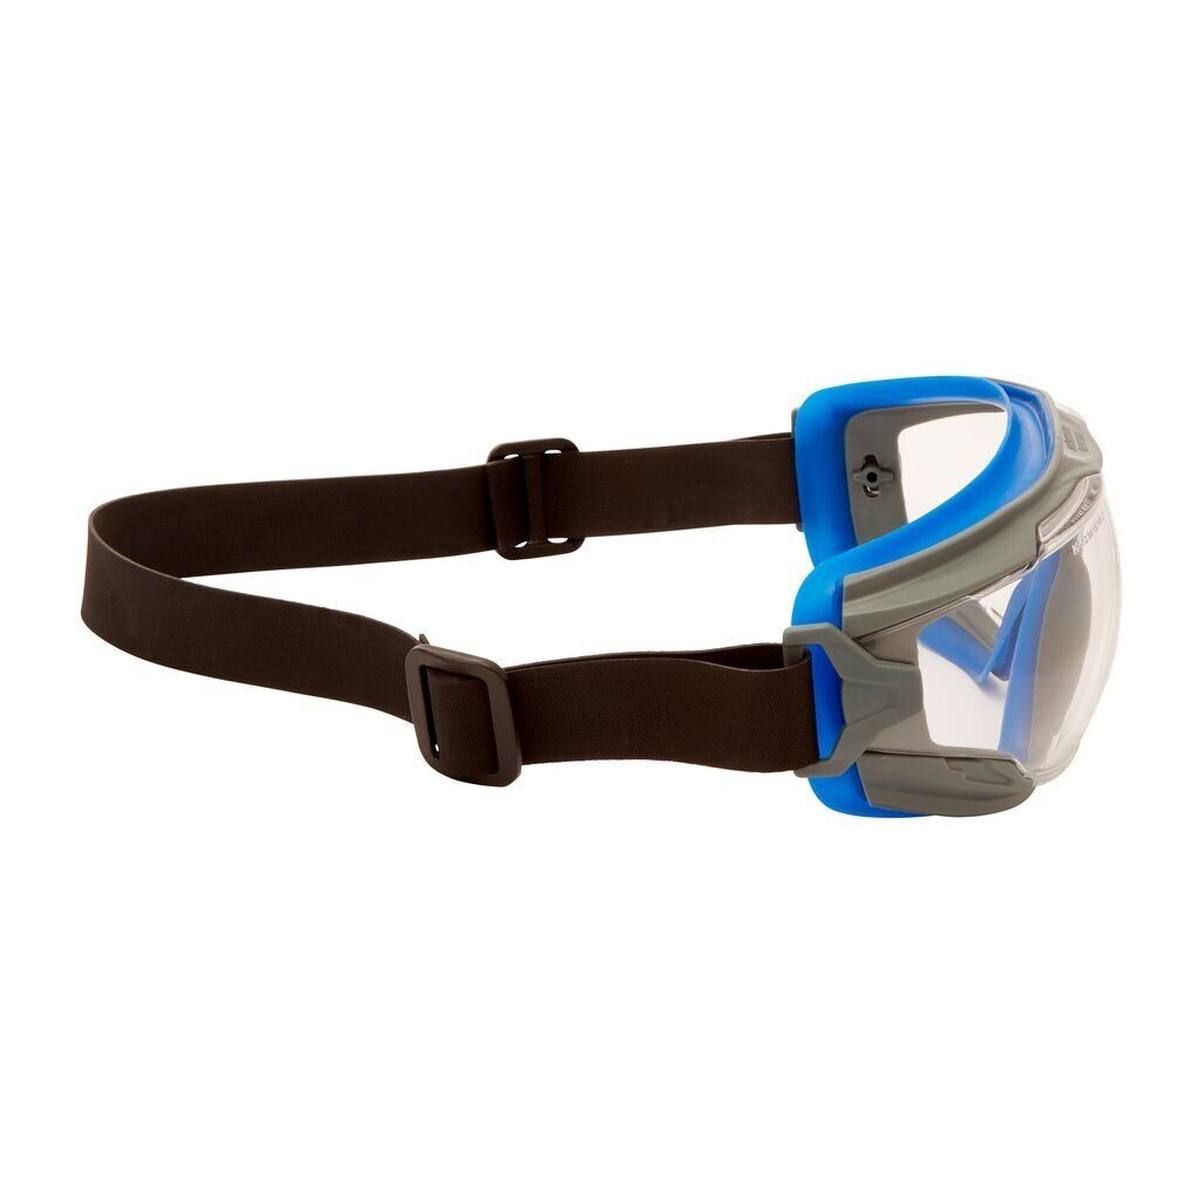 3M Gafas de visión total GoggleGear 500 GG501NSGAF-BLU, esterilizables en autoclave, montura gris azulada, cinta de neopreno negra, lentes transparentes